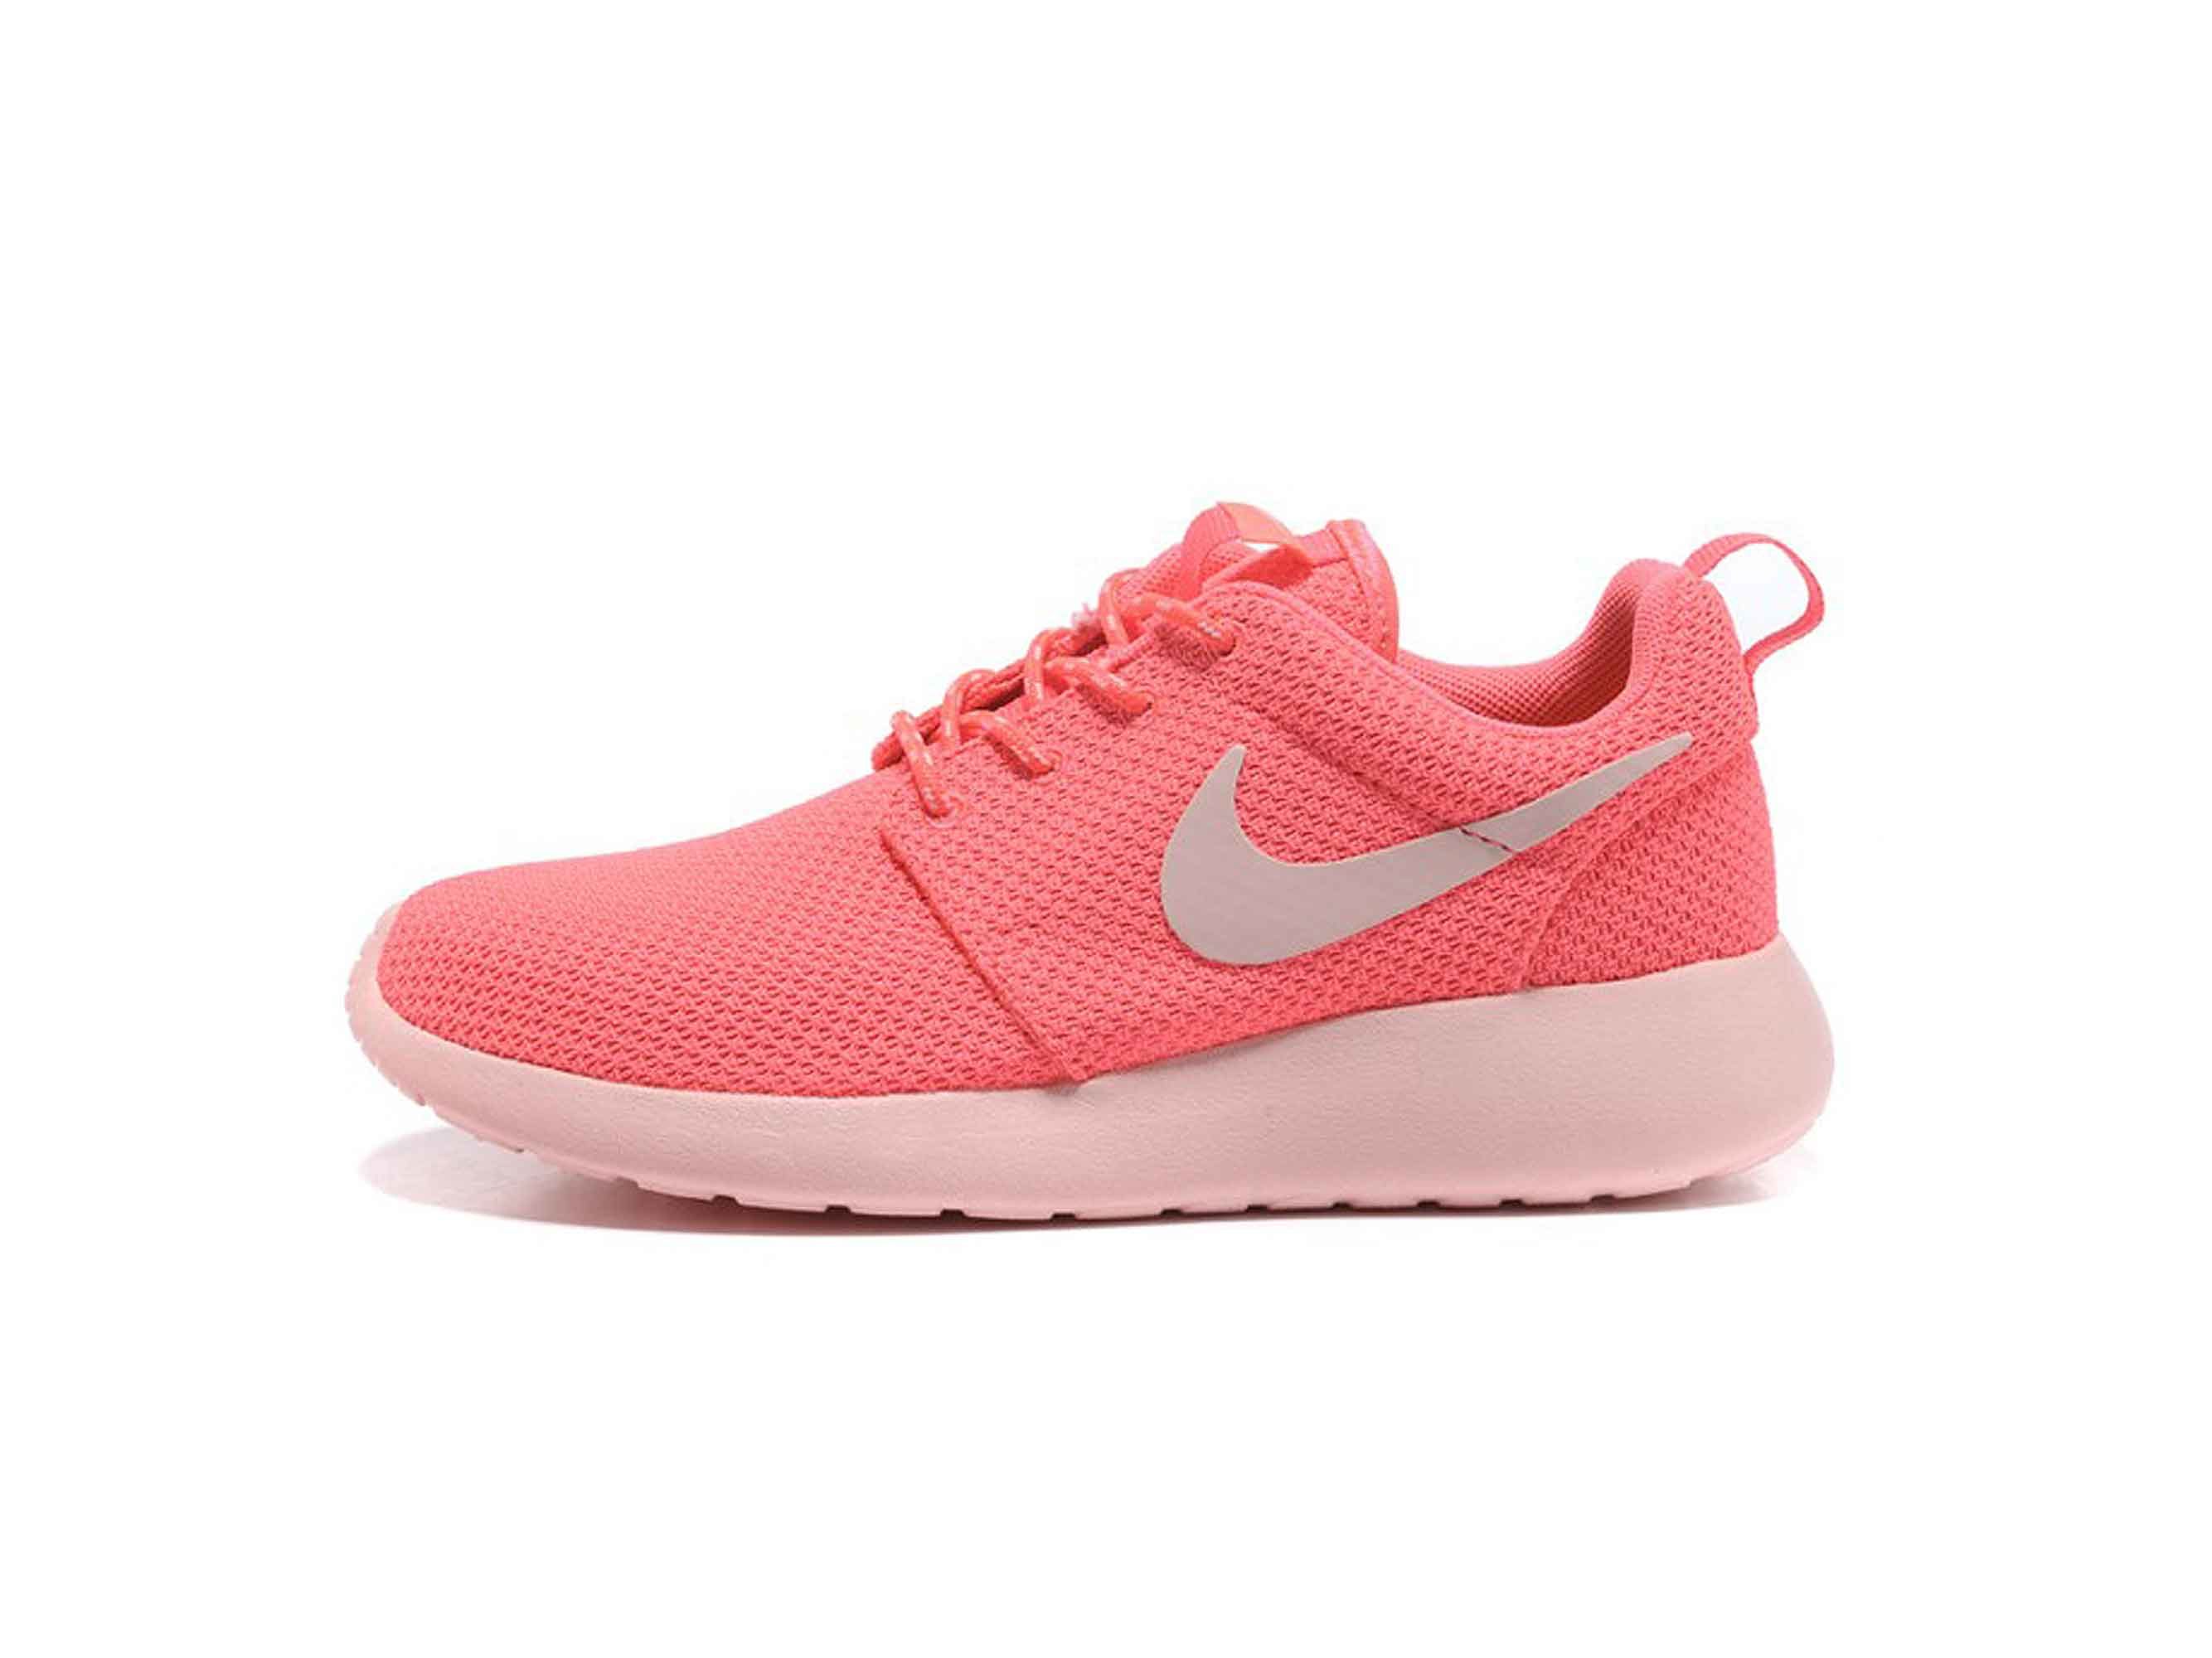 Nike roushe run light pink